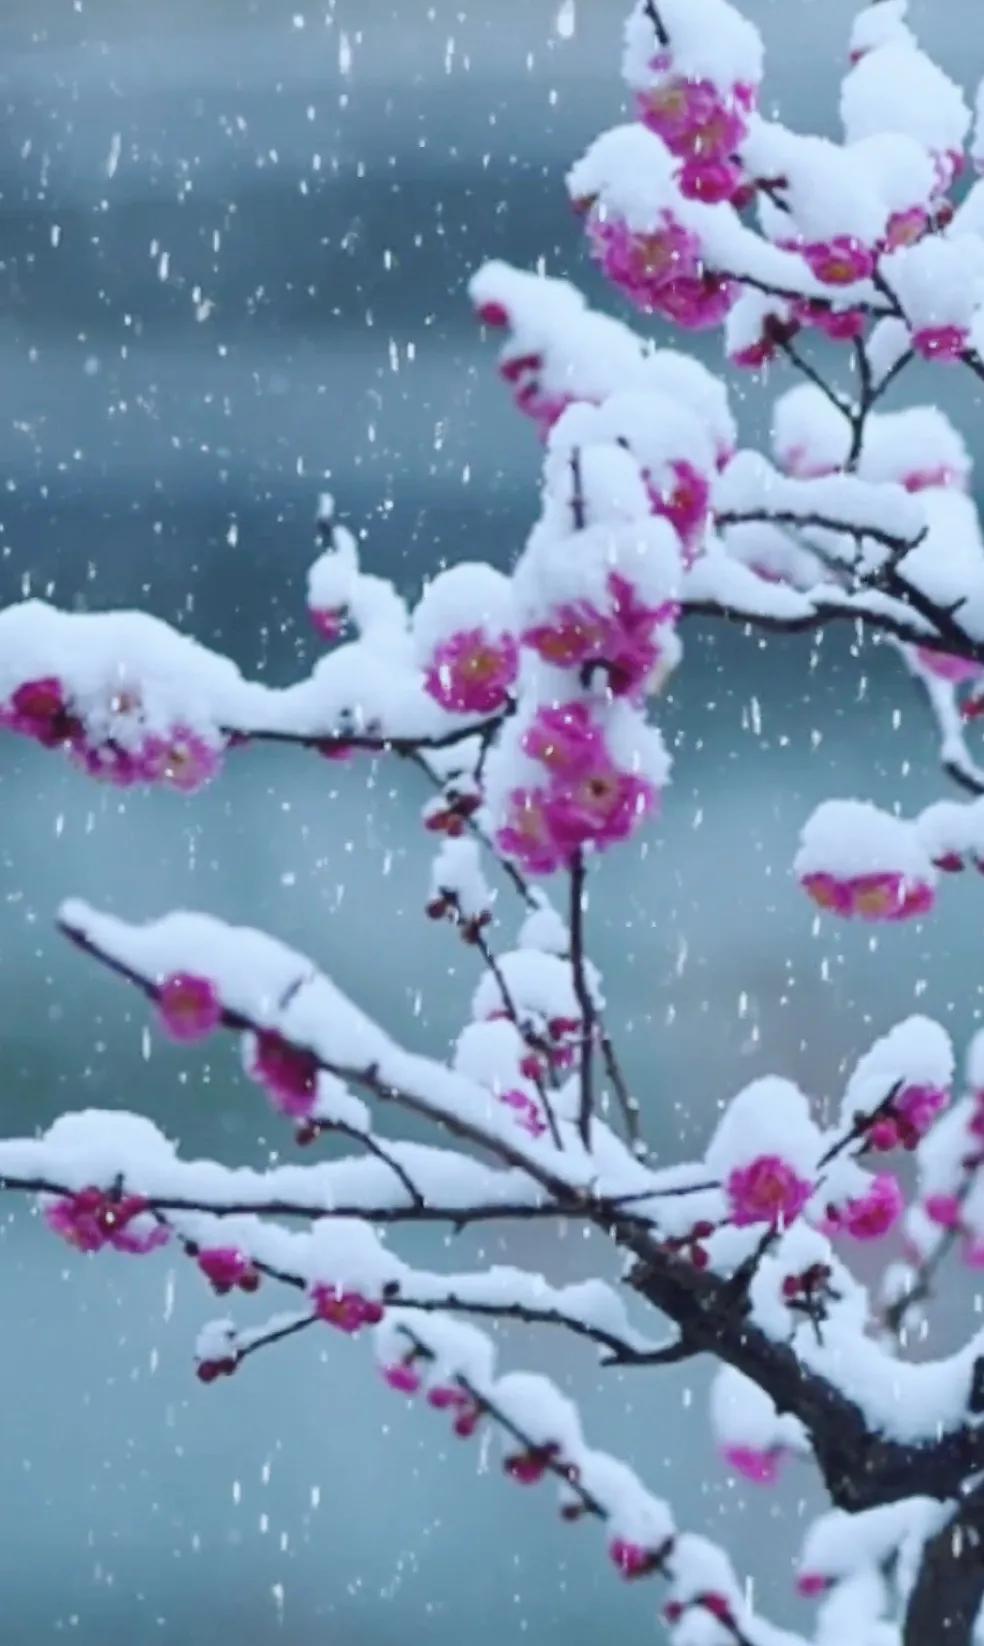 梅花，不畏寒冷，独步早春，傲立雪中。欣赏雪中梅花的诗句和美景